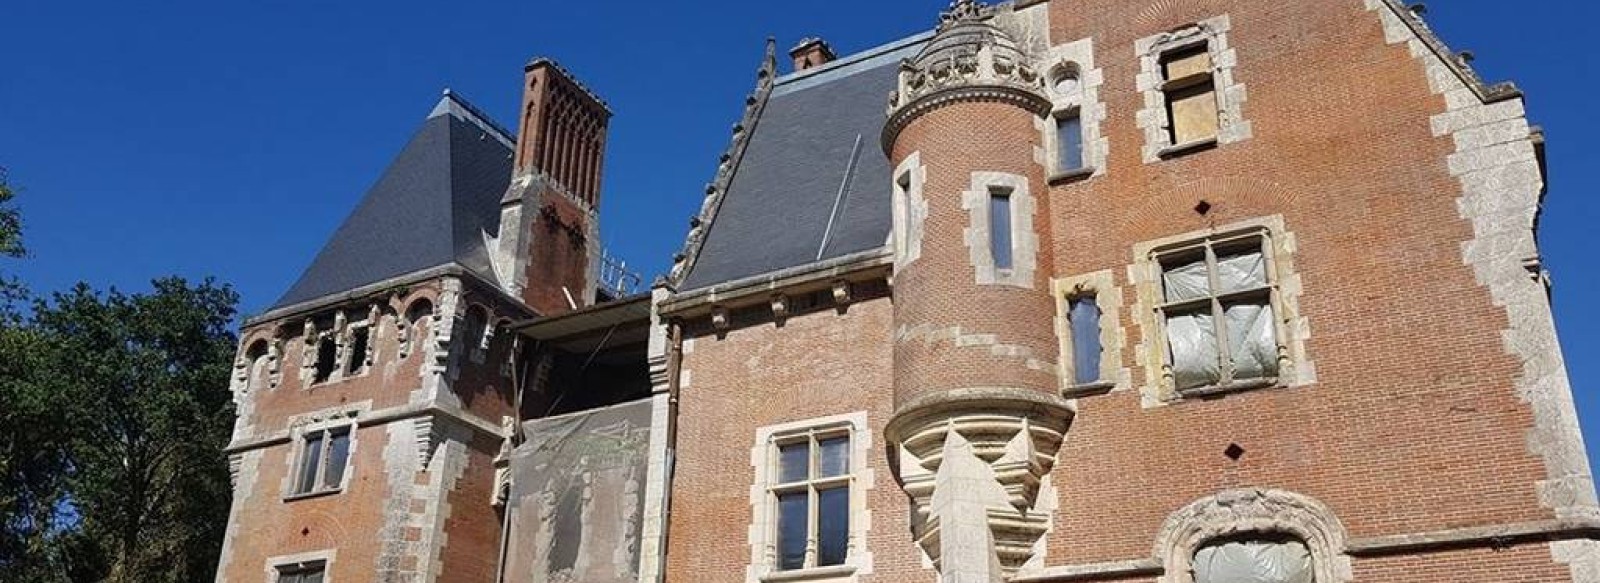 Chateau de la Foreterie